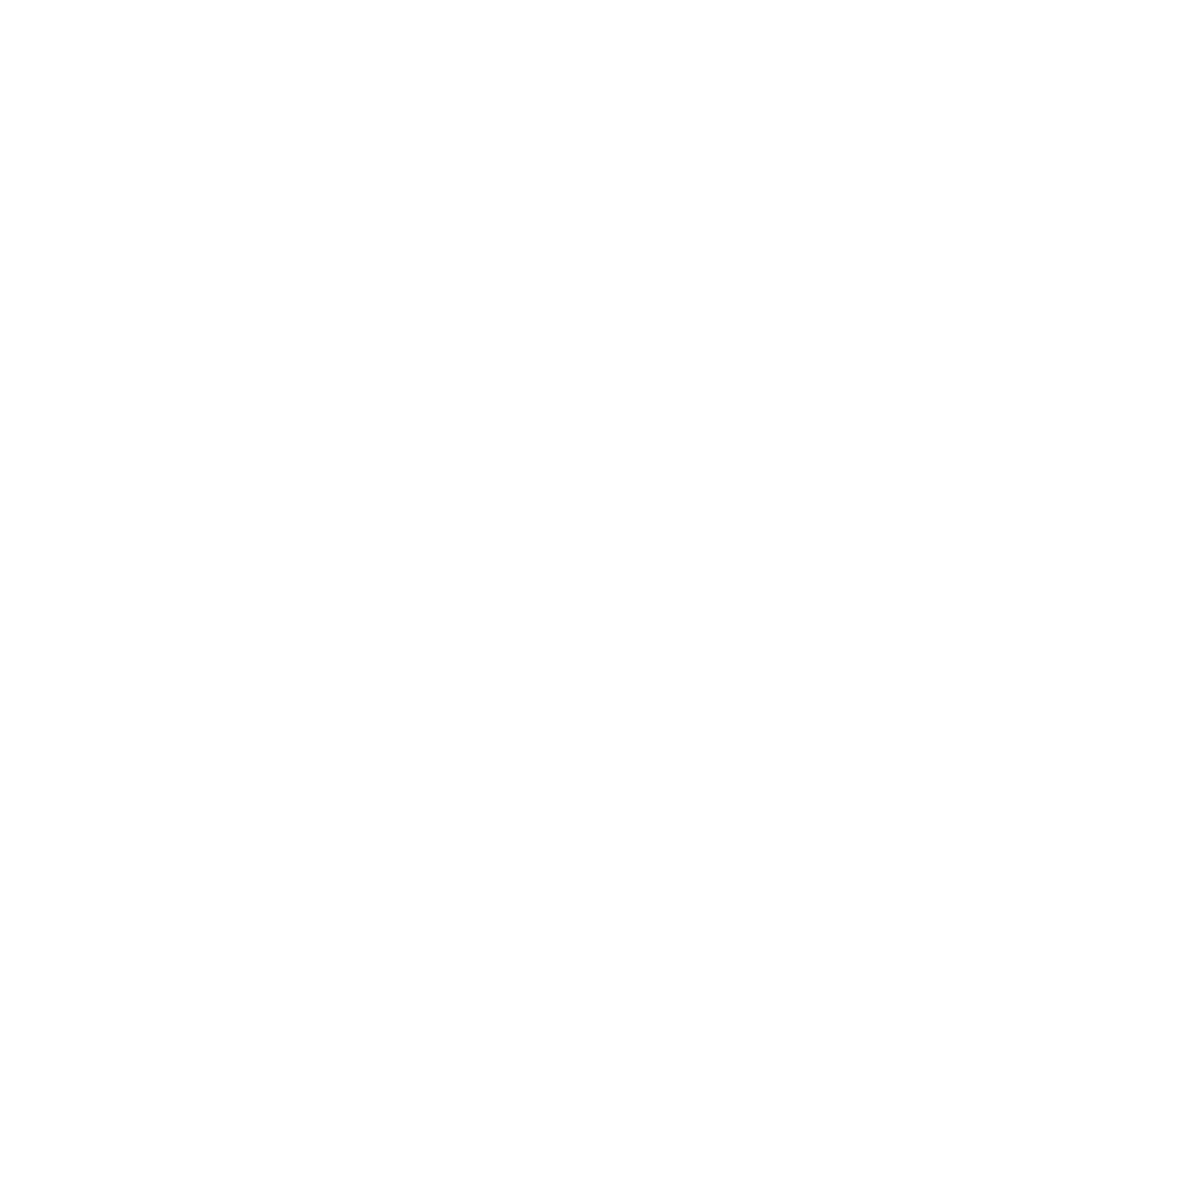 IFI CLAIMS background logo